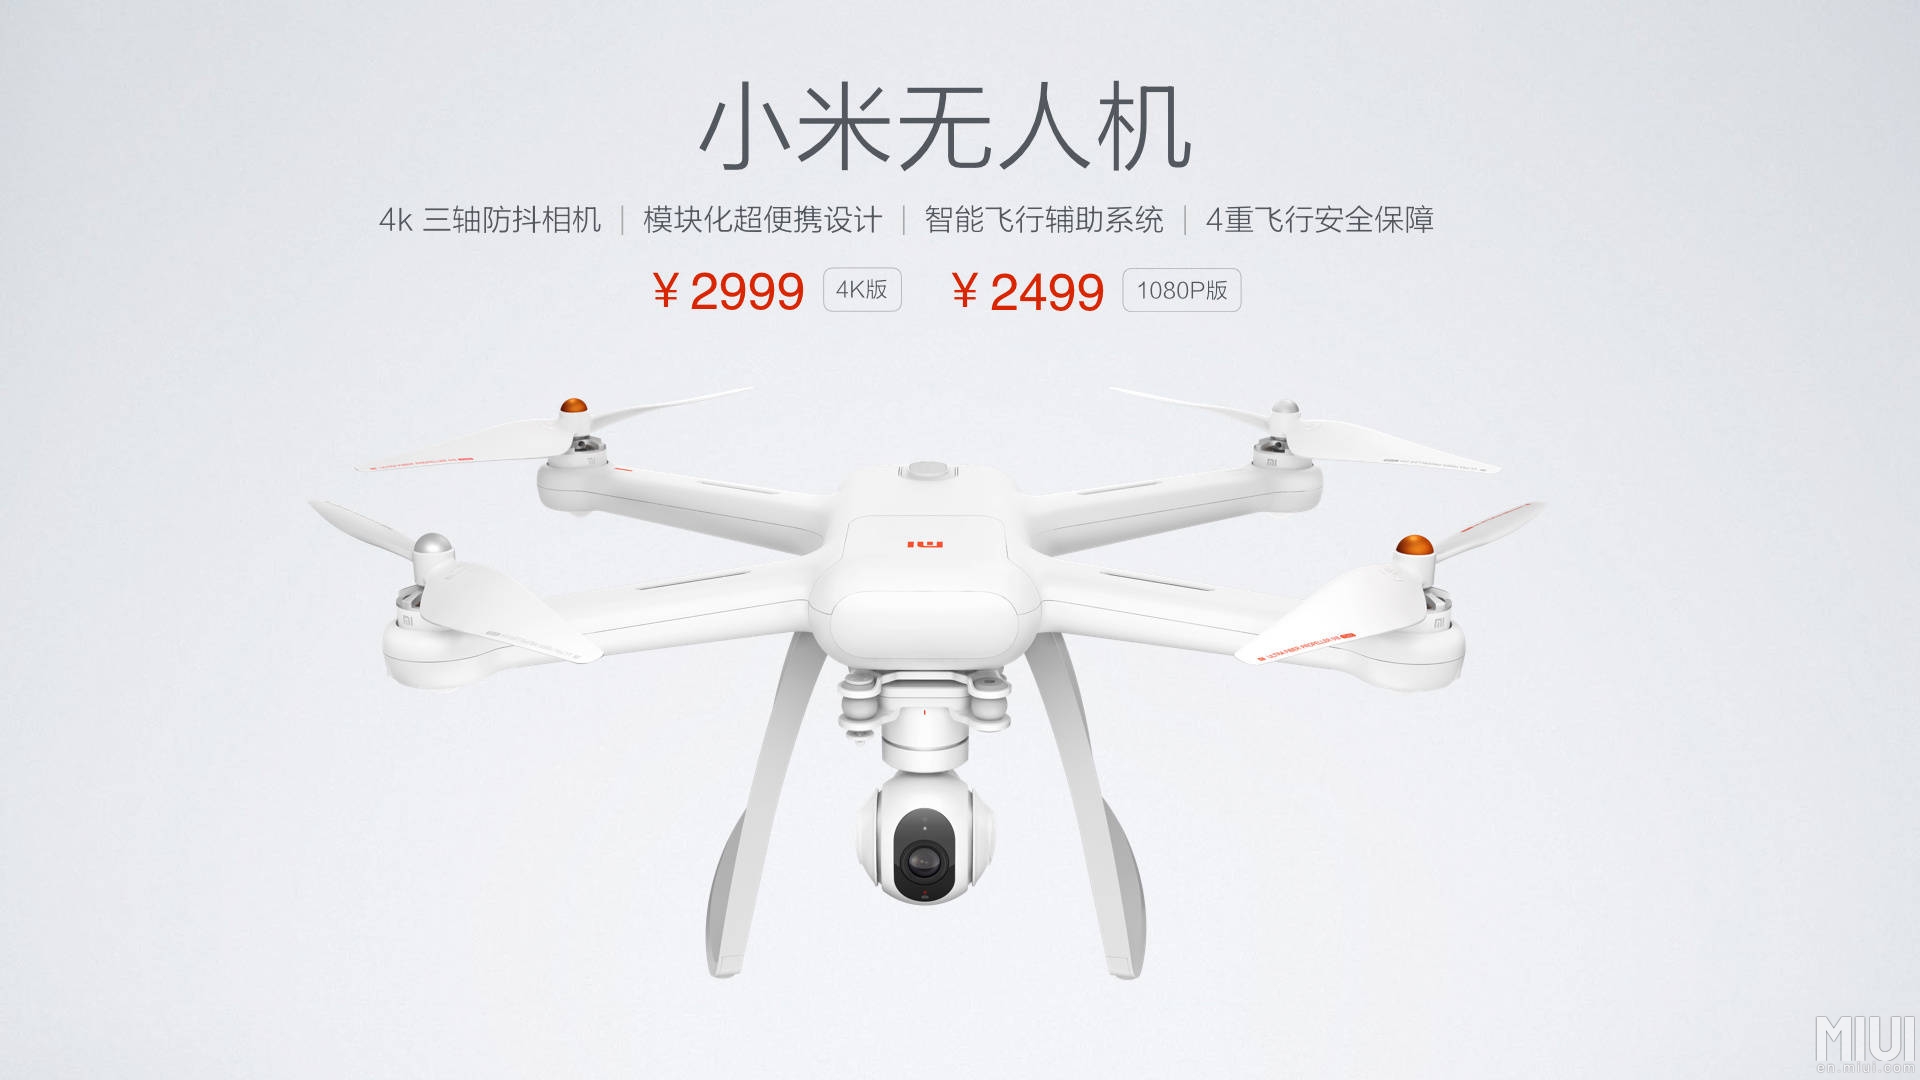 มาจริง!!! Mi Drone โดรนราคาประหยัดจาก Xiaomi